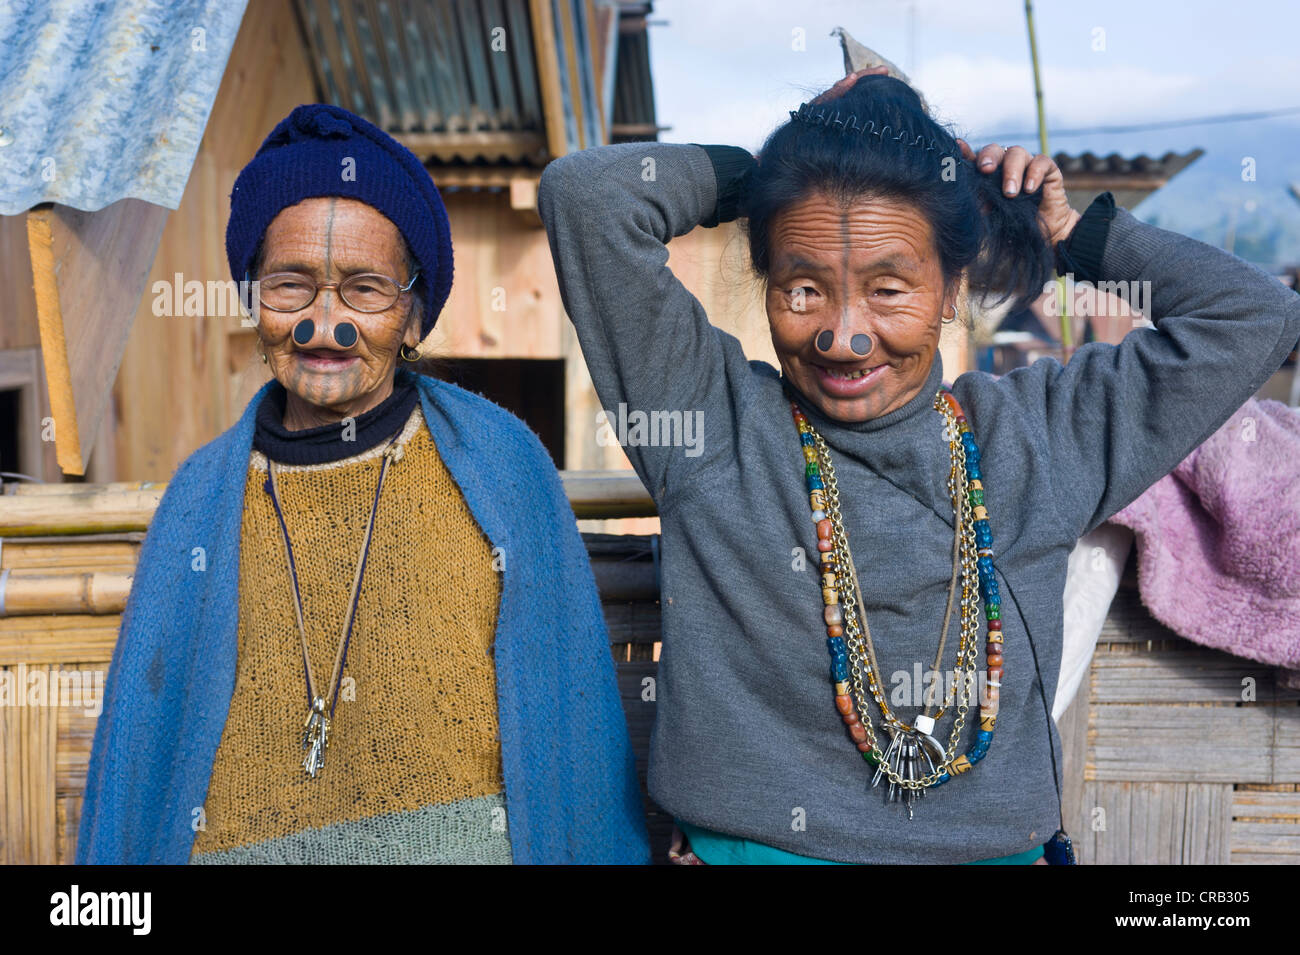 Les vieilles femmes de la tribu Apatani, connu pour les morceaux de bois dans leur nez pour les rendre laids, Ziro, de l'Arunachal Pradesh Banque D'Images